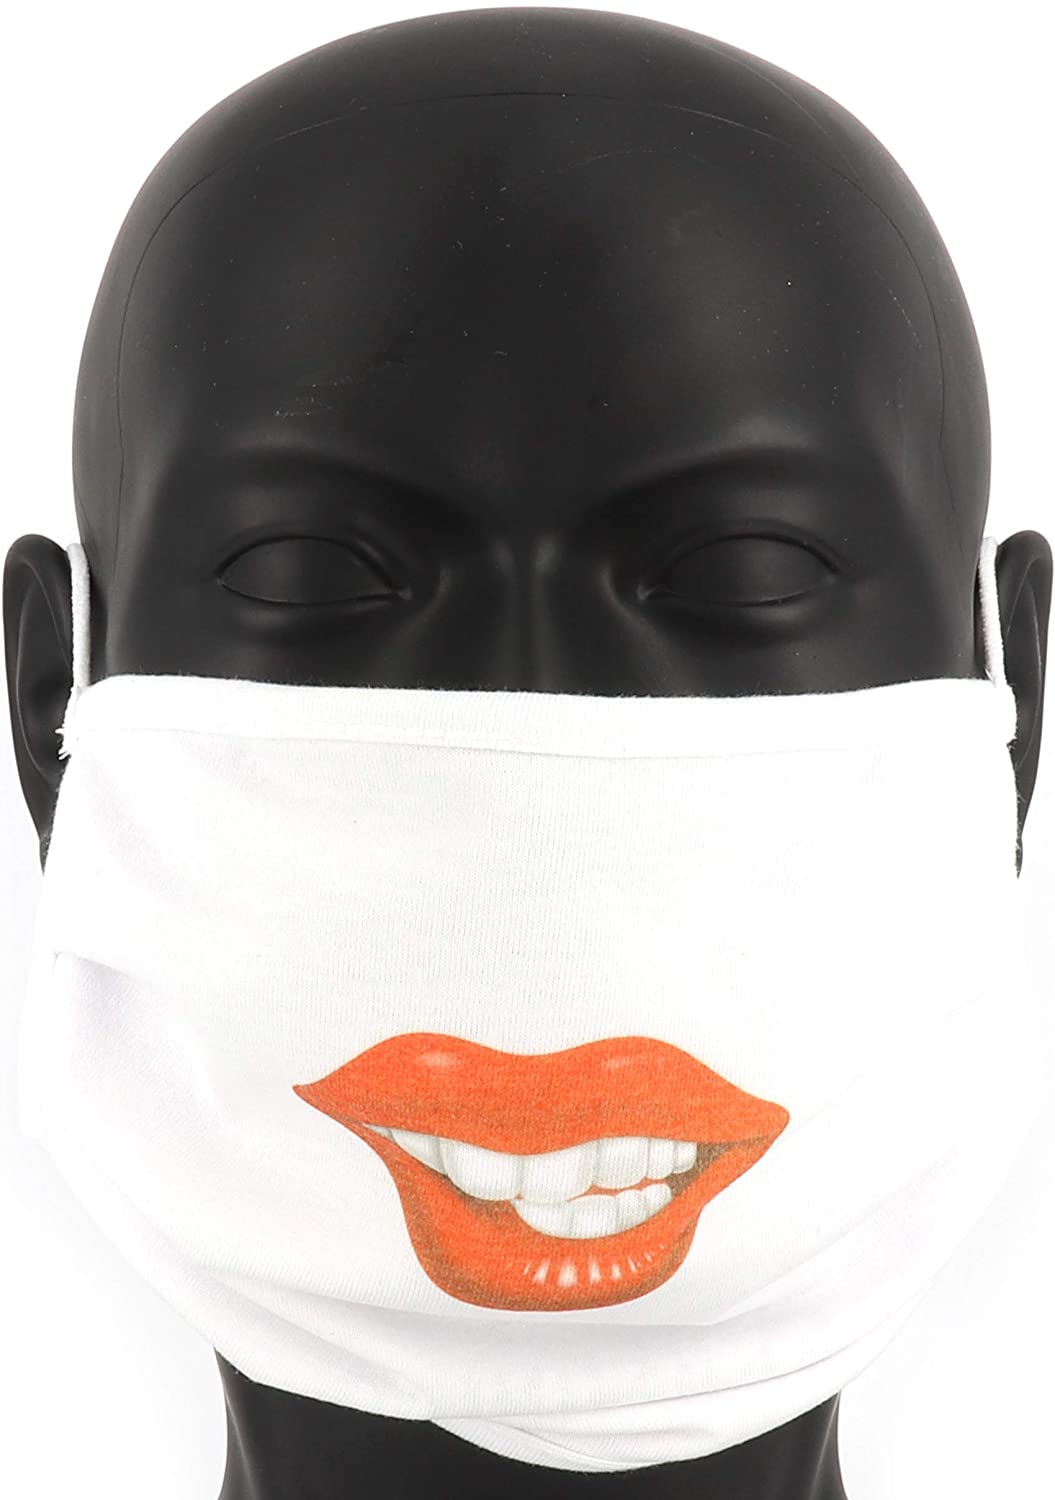 PICSonPAPER Community Maske Stoffmaske Mund-Nasen Maske waschbar Motiv (Mund)